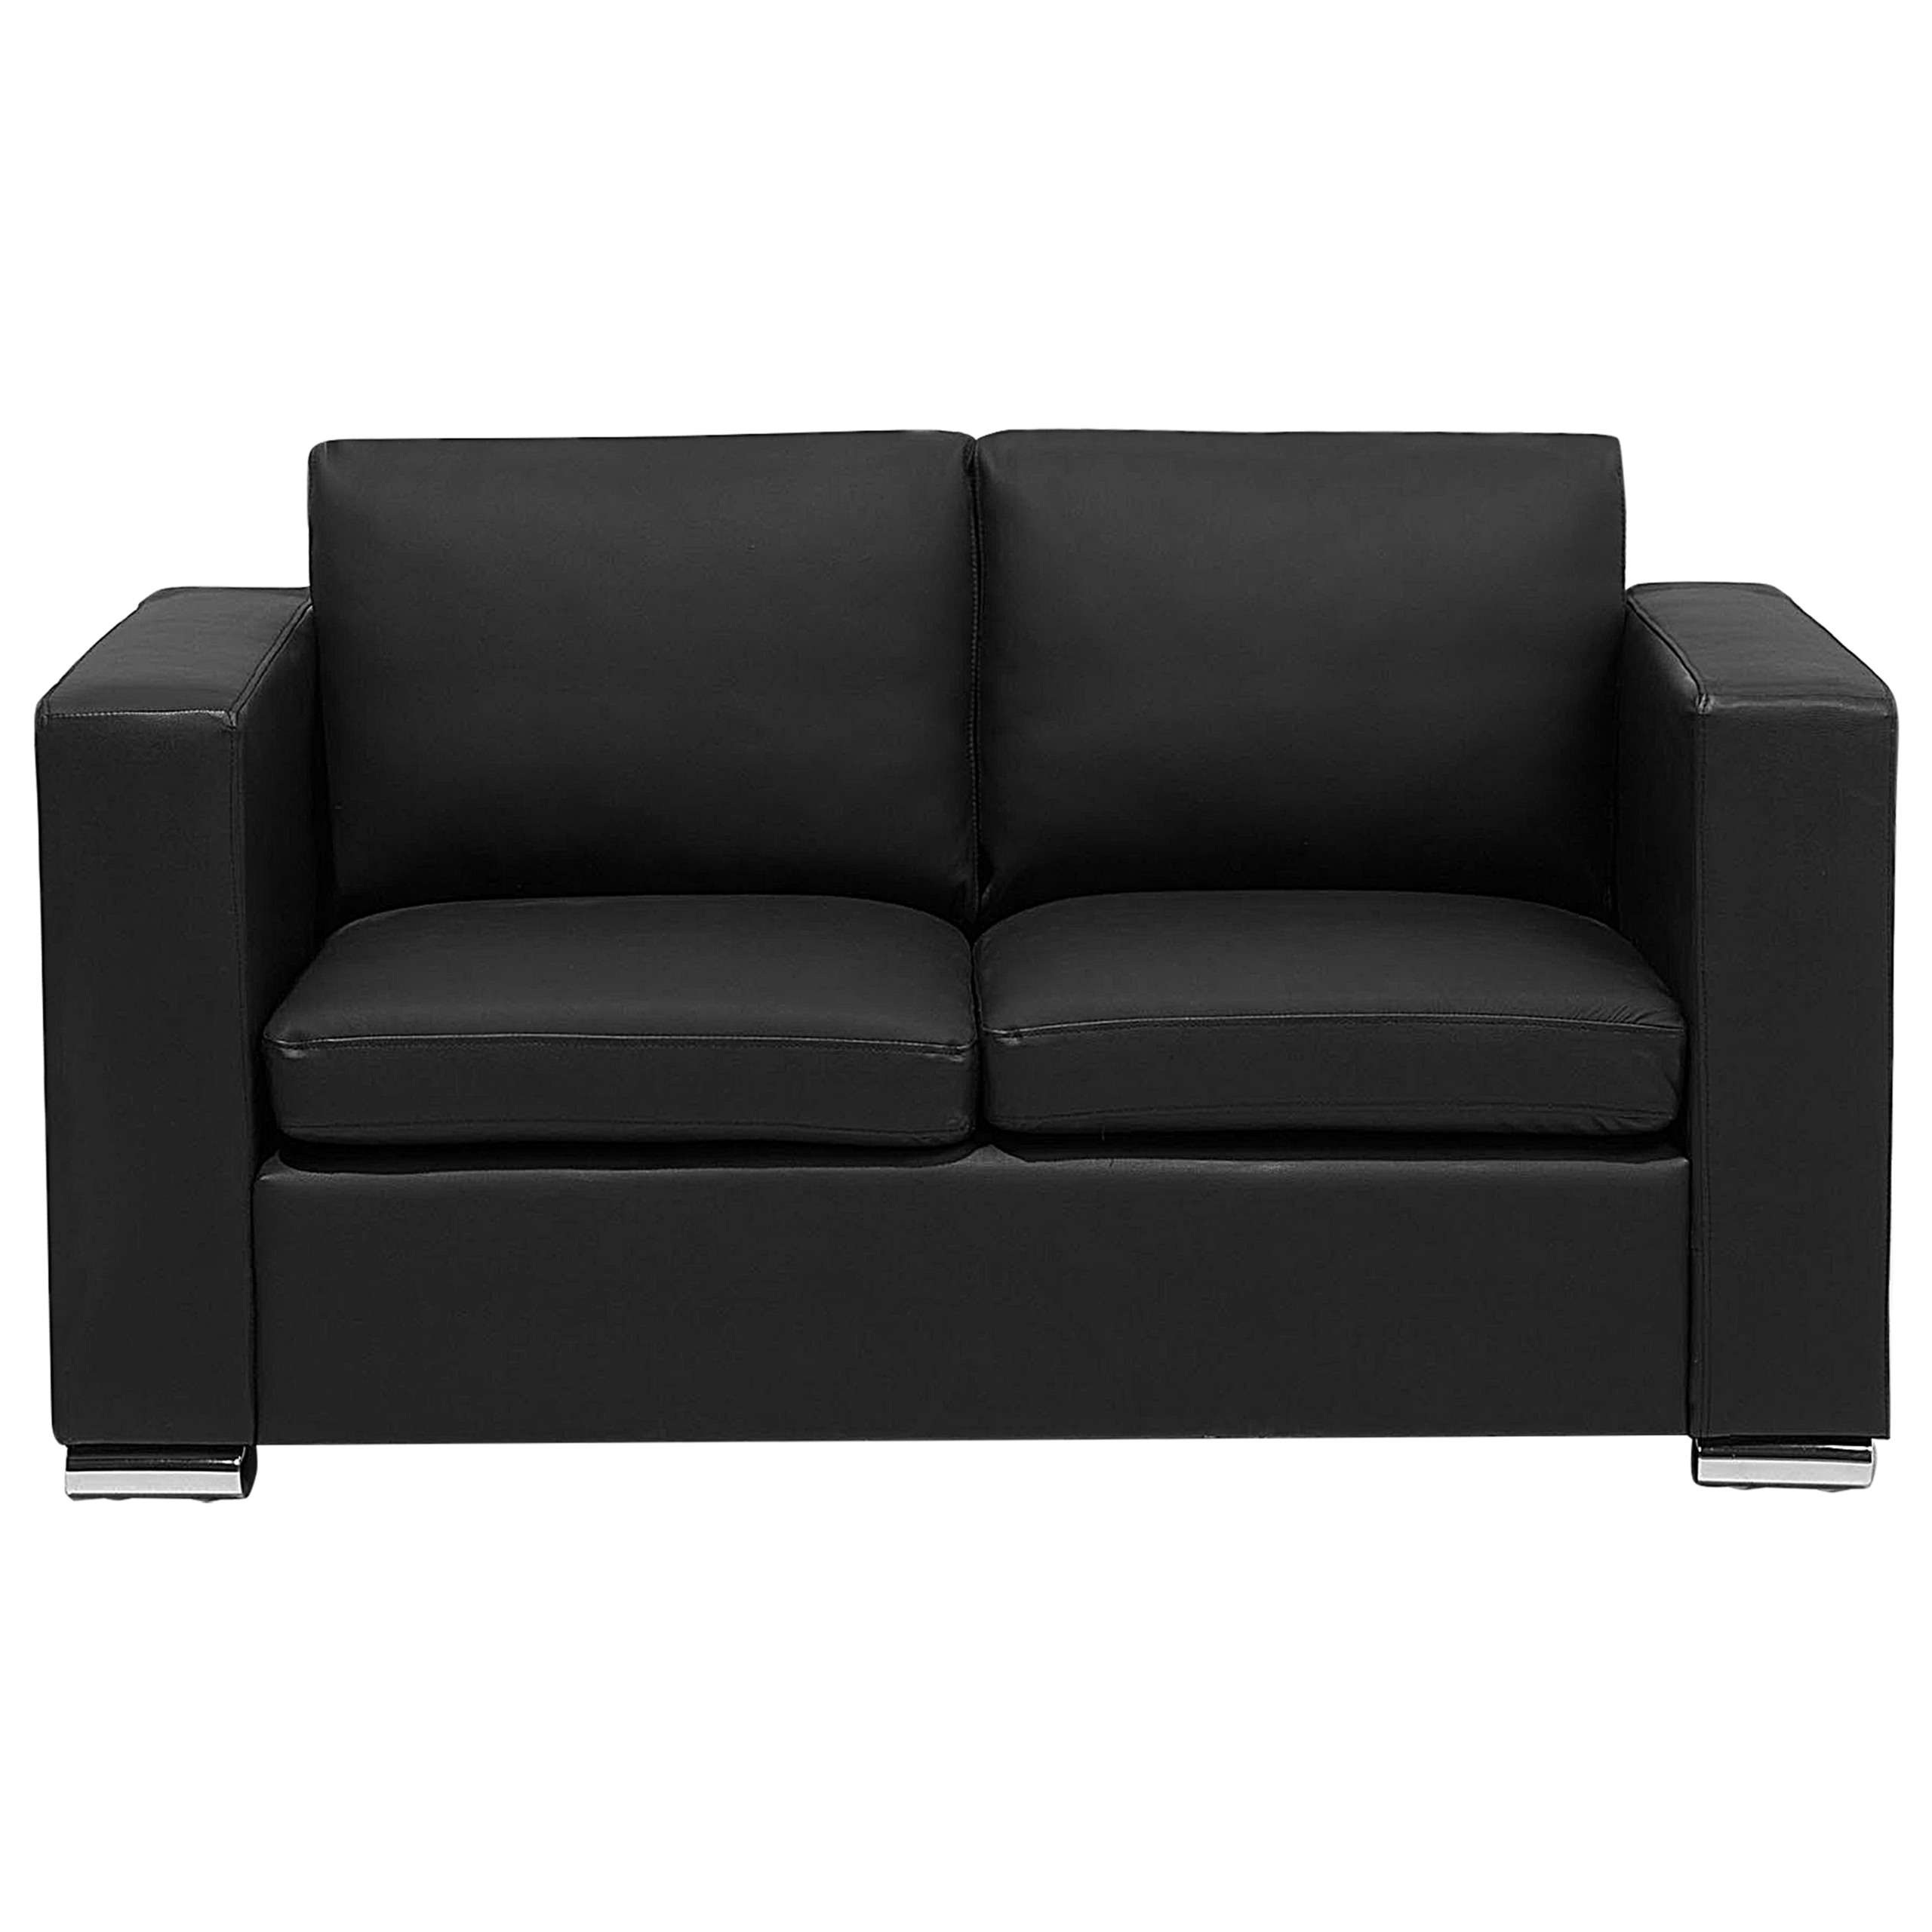 Beliani 2 Seater Sofa Loveseat Black Genuine Leather Upholstery Chromed Legs Retro Design